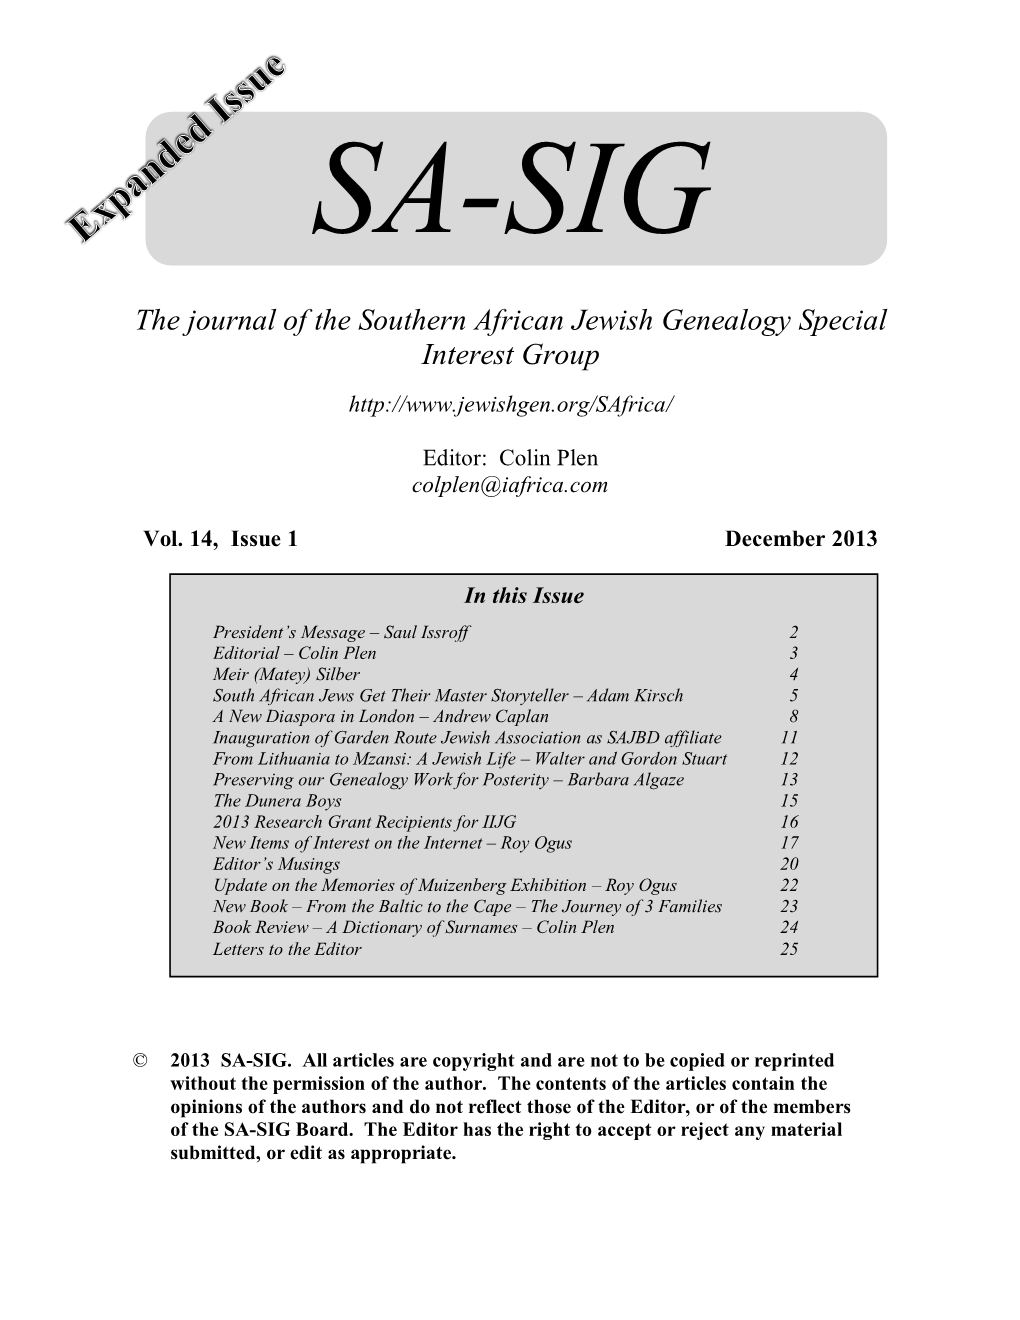 SA-SIG Newsletter P Ostal S Ubscription F